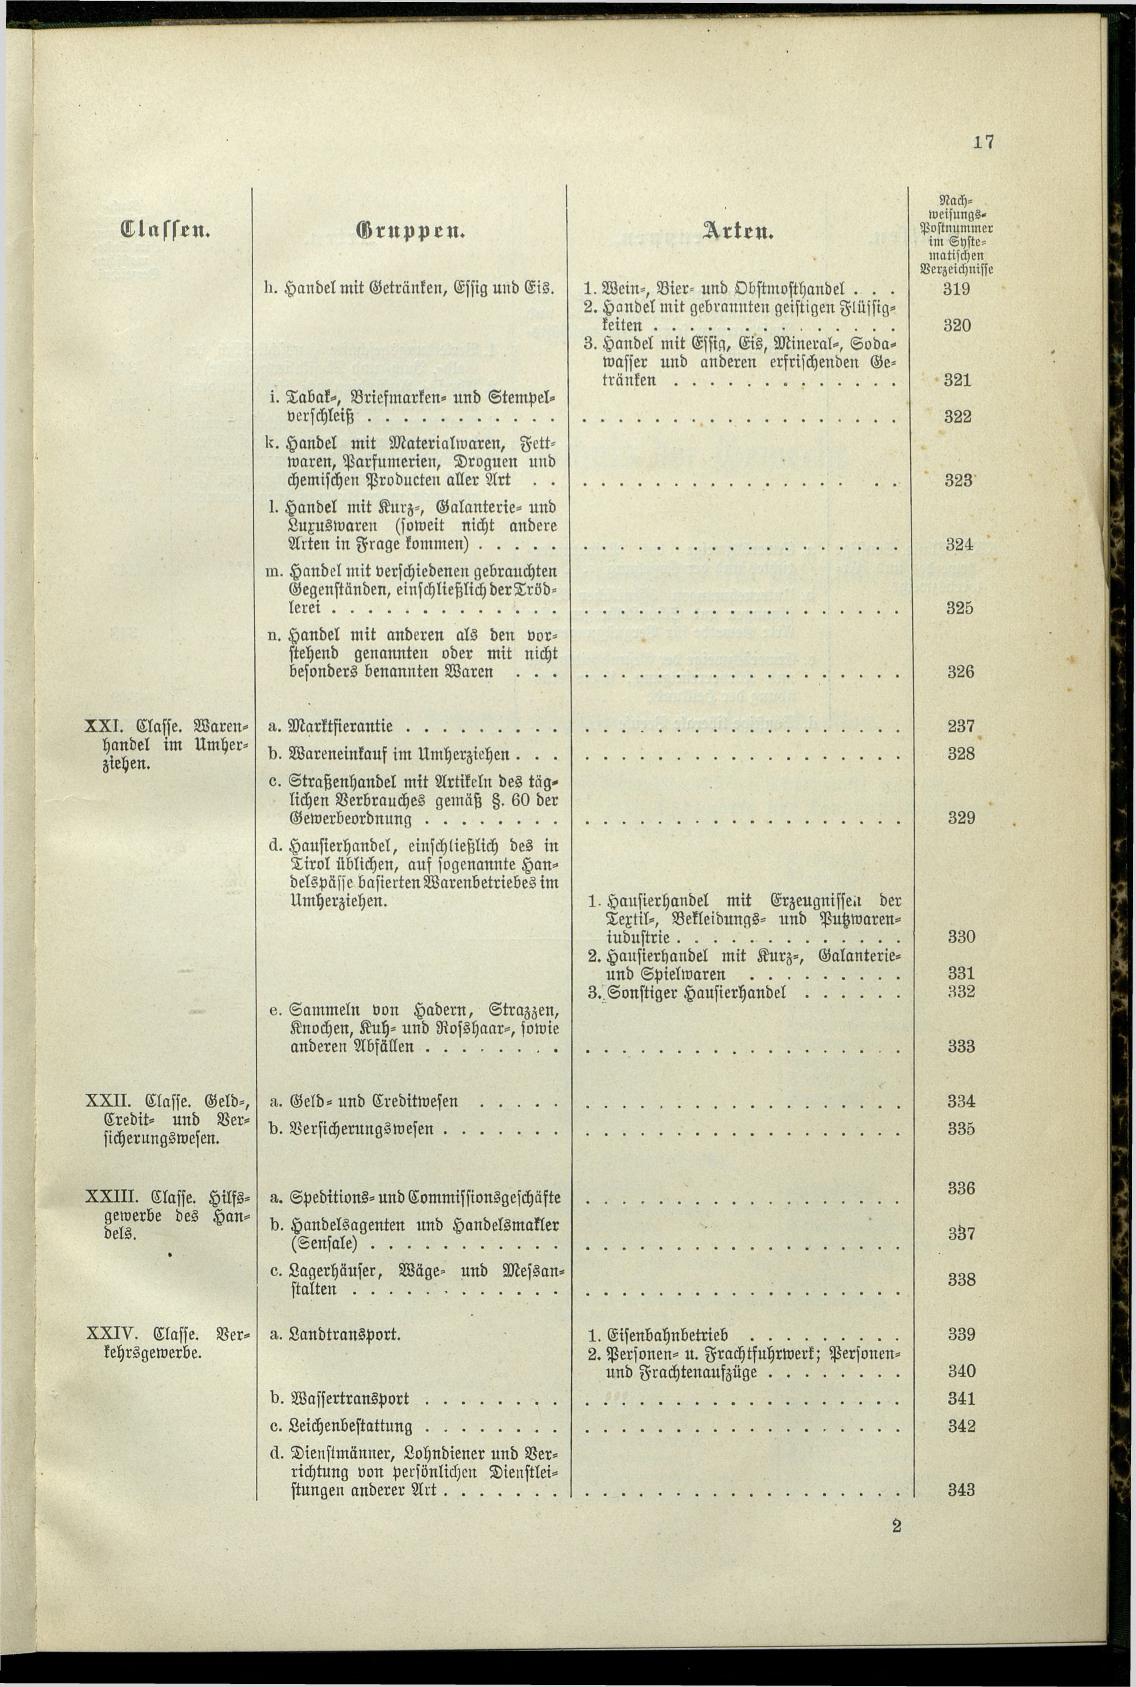 Verzeichnis der Gewerbe der im Reichsrathe vertretenen Königreiche und Länder 1900 - Seite 21